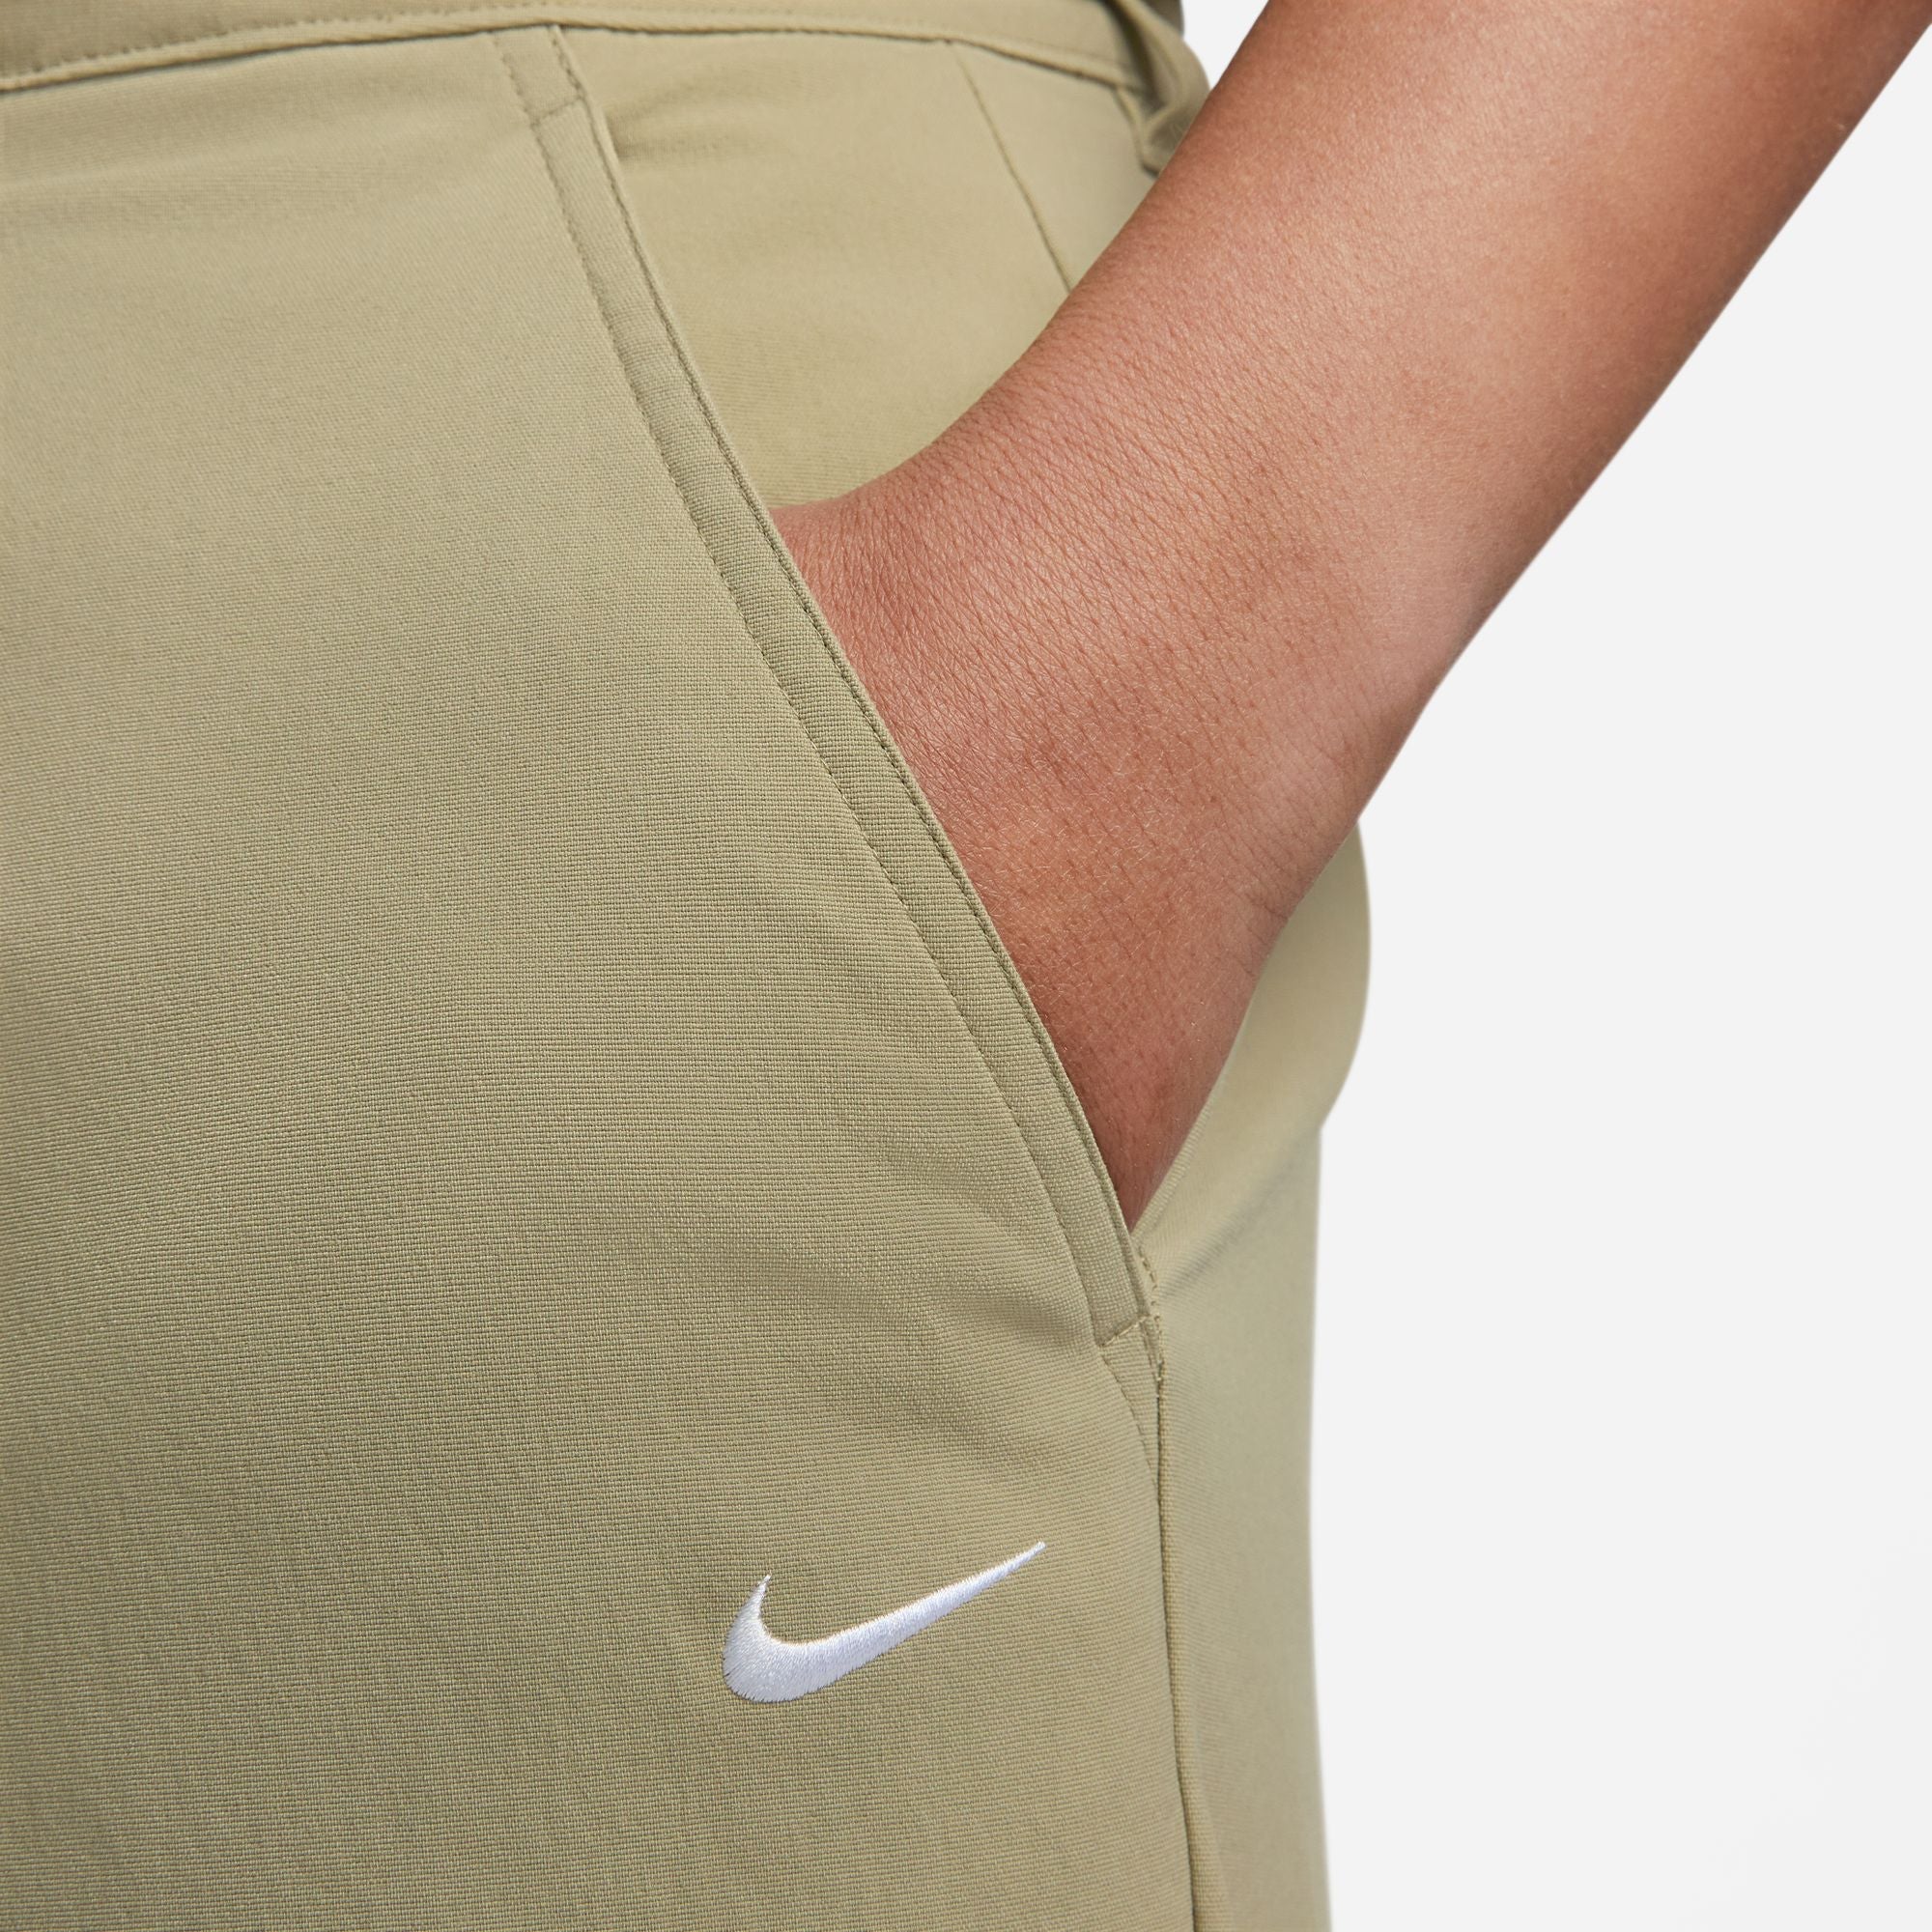 Nike SB Chino Skate Pants Neutral Olive/White